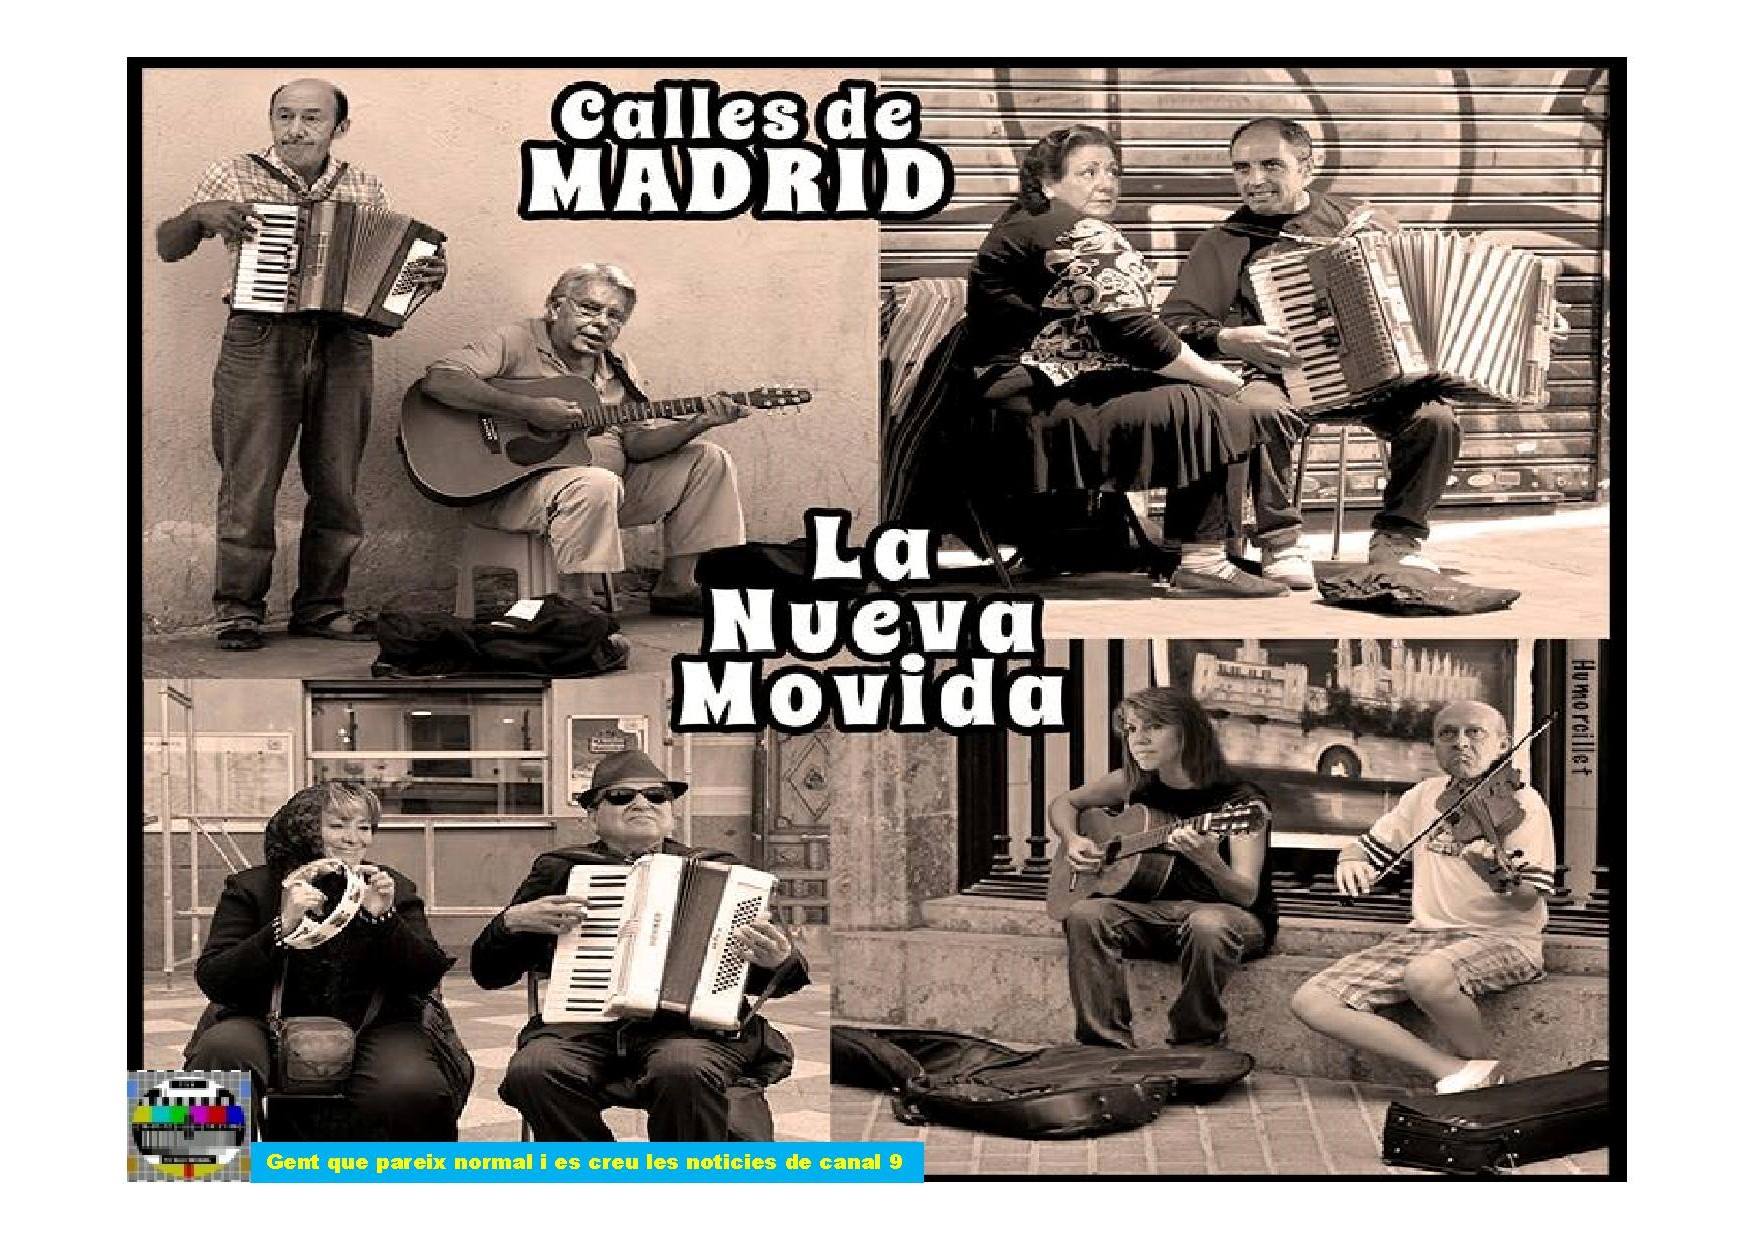 Calles de Madrid-La nueva Movida